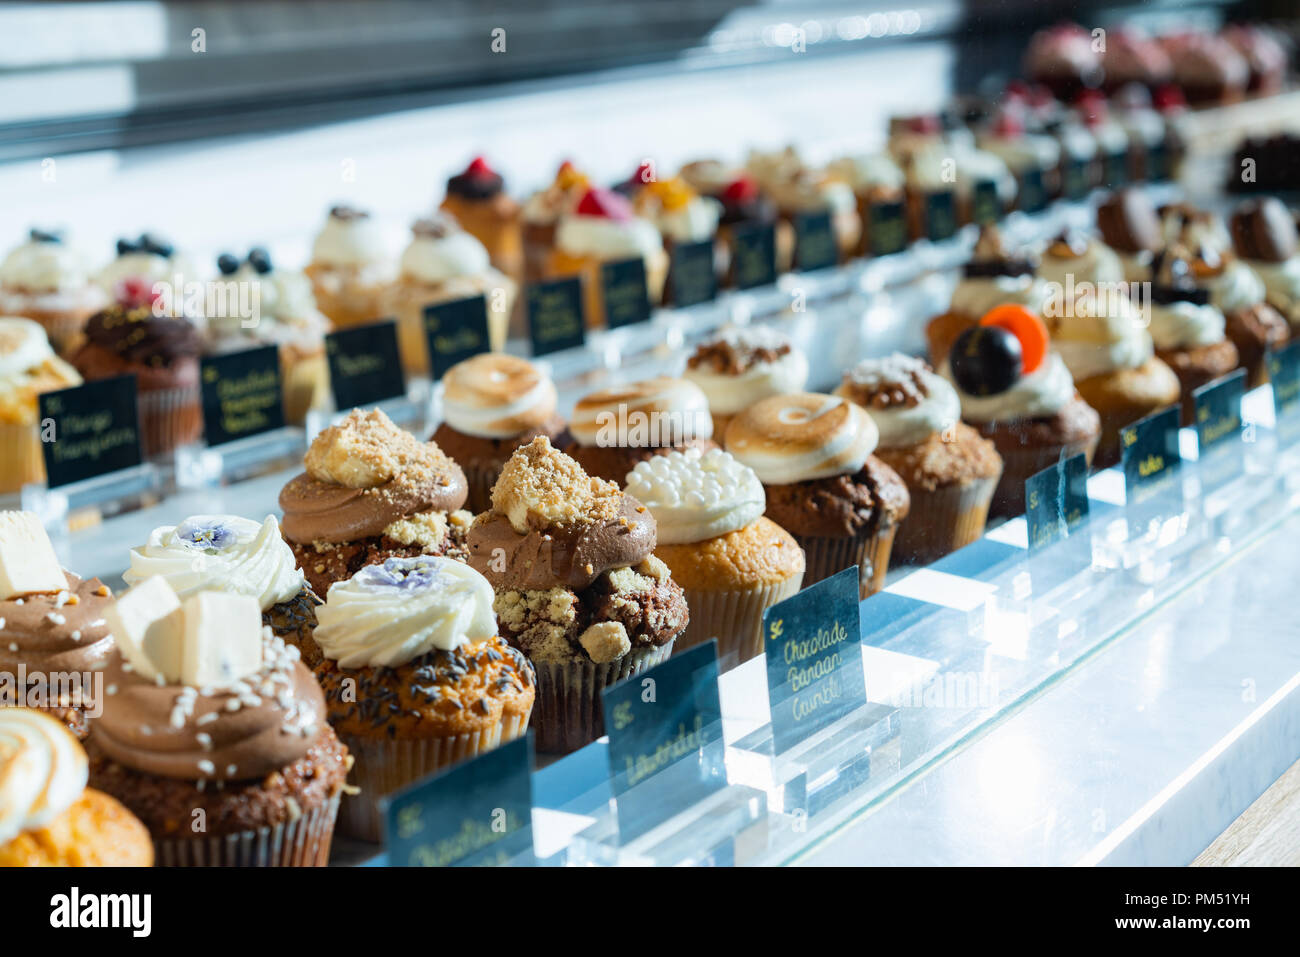 Verschiedene Muffins und Kuchen für den Verkauf in einer Bäckerei Vitrine  Stockfotografie - Alamy